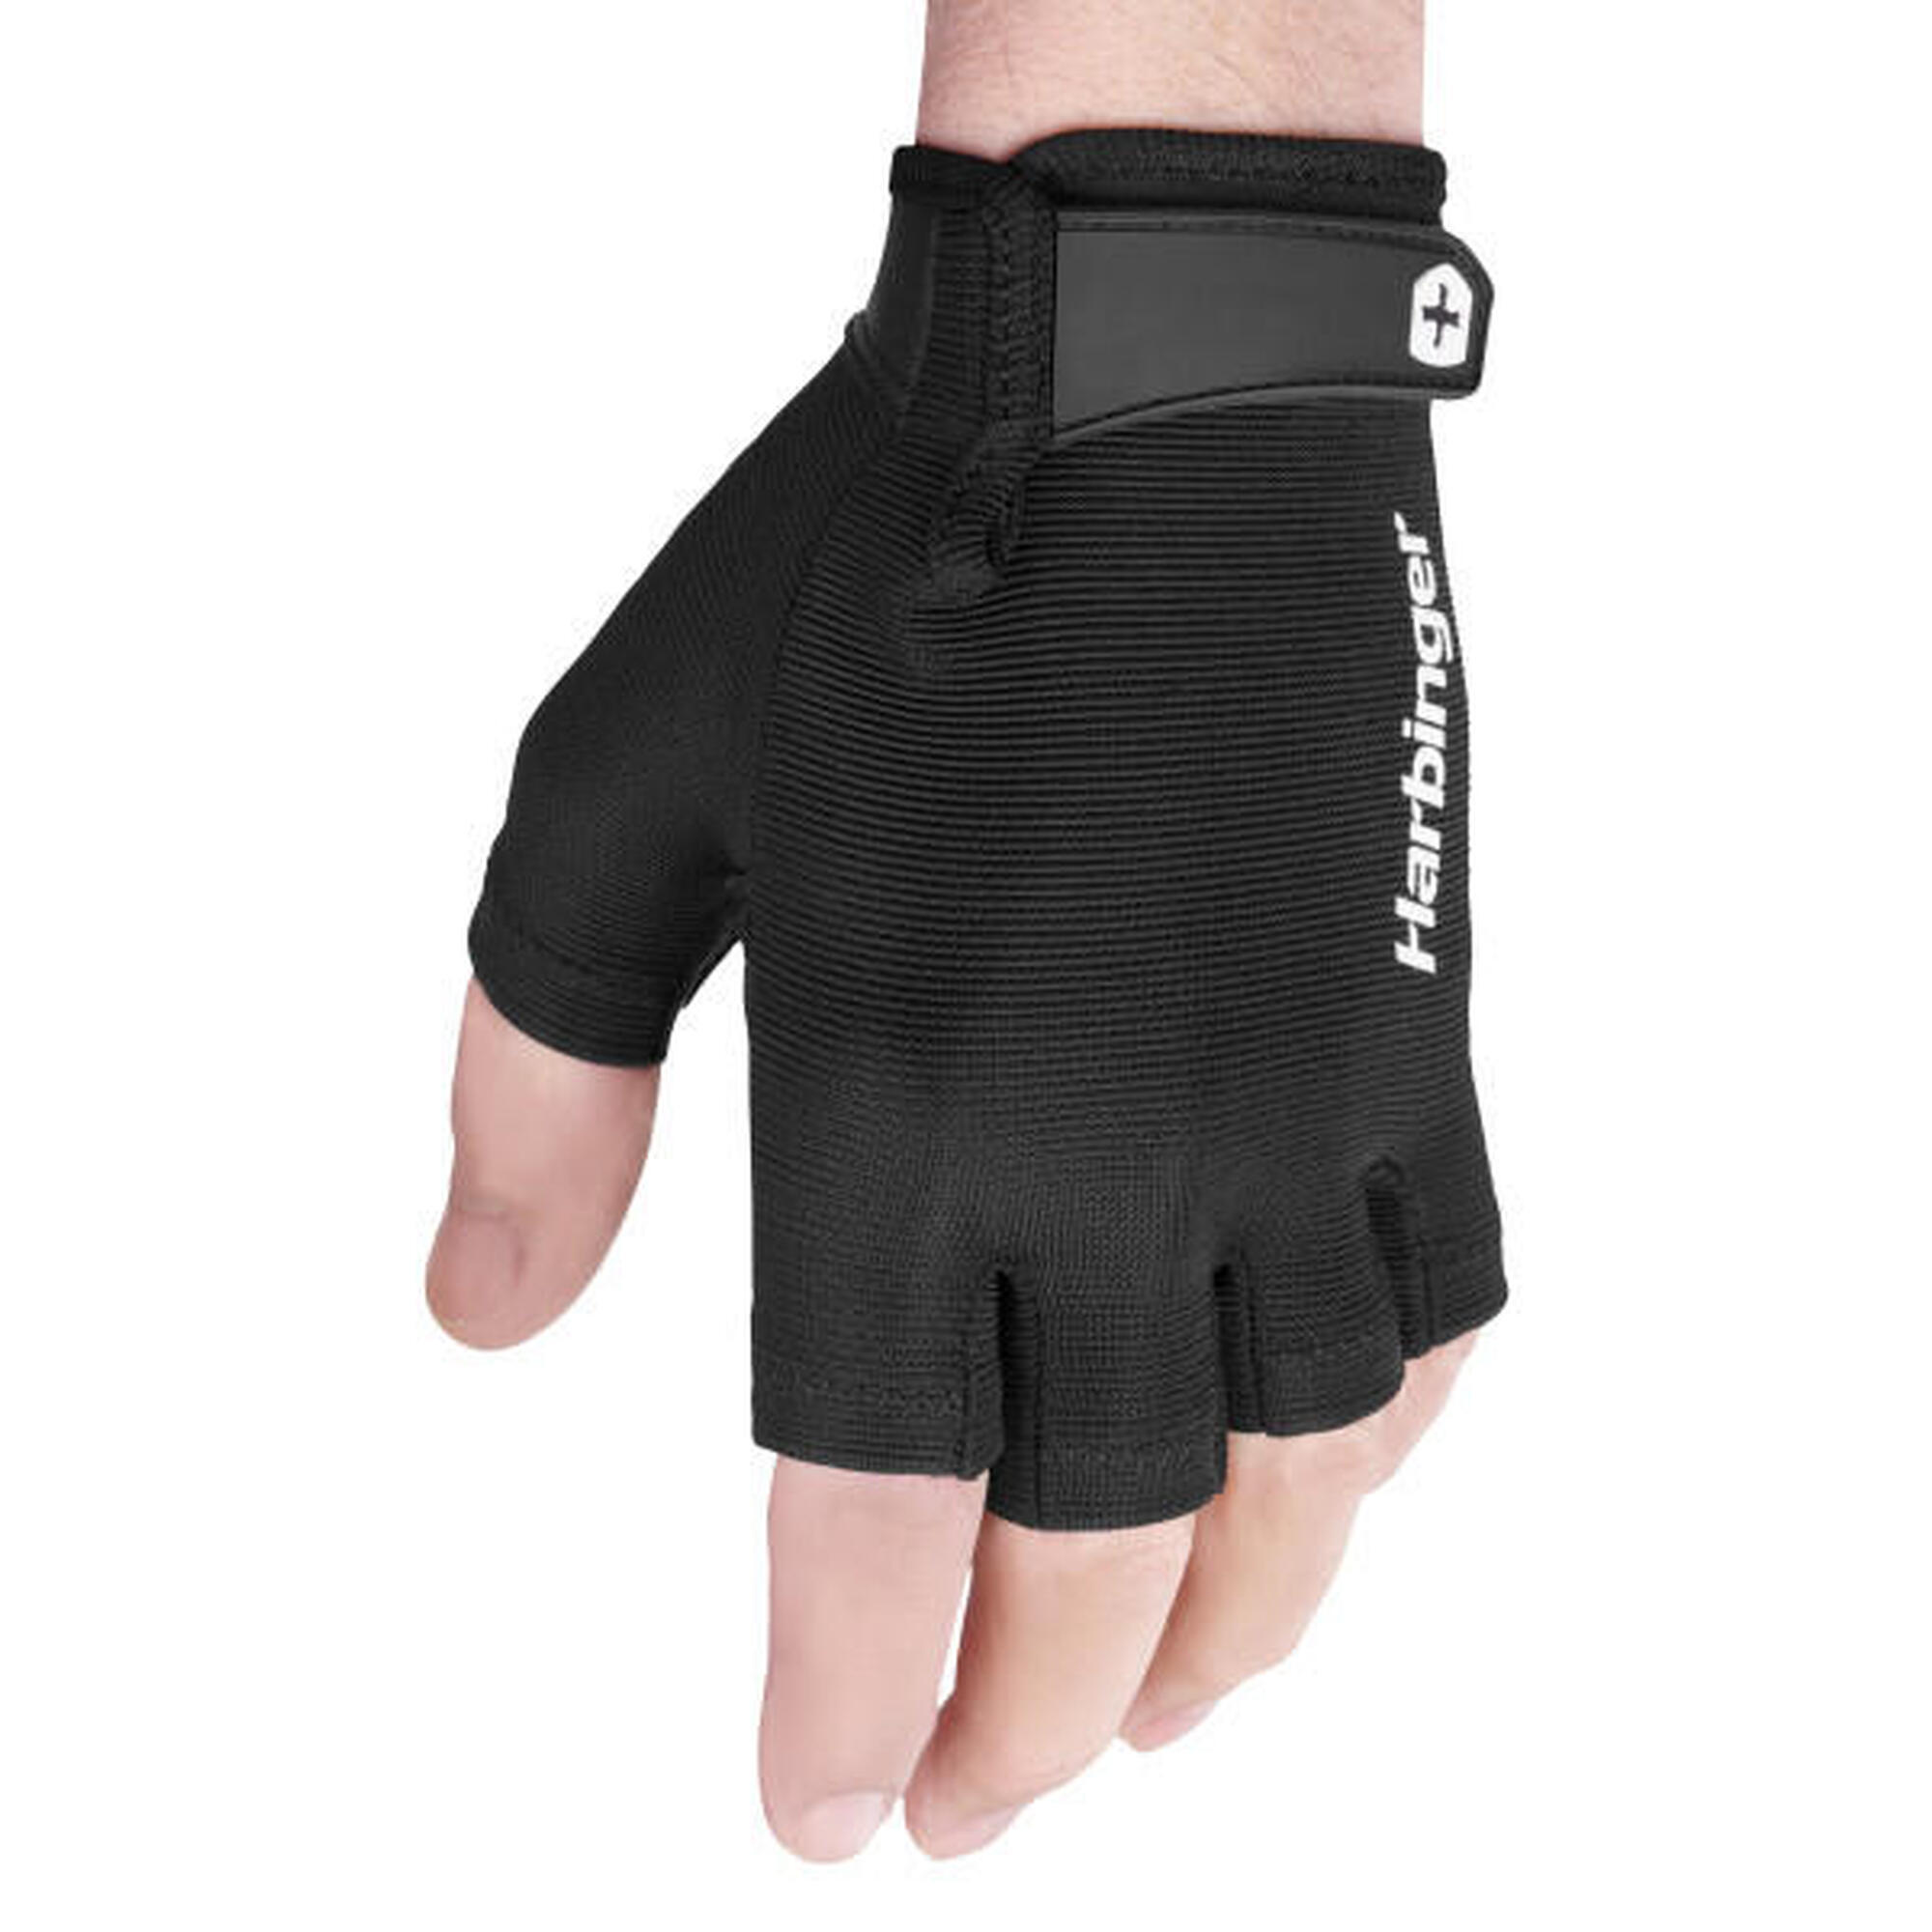 Harbinger gants d'haltérophilie avec prise ferme, confort optimal taille M Noir